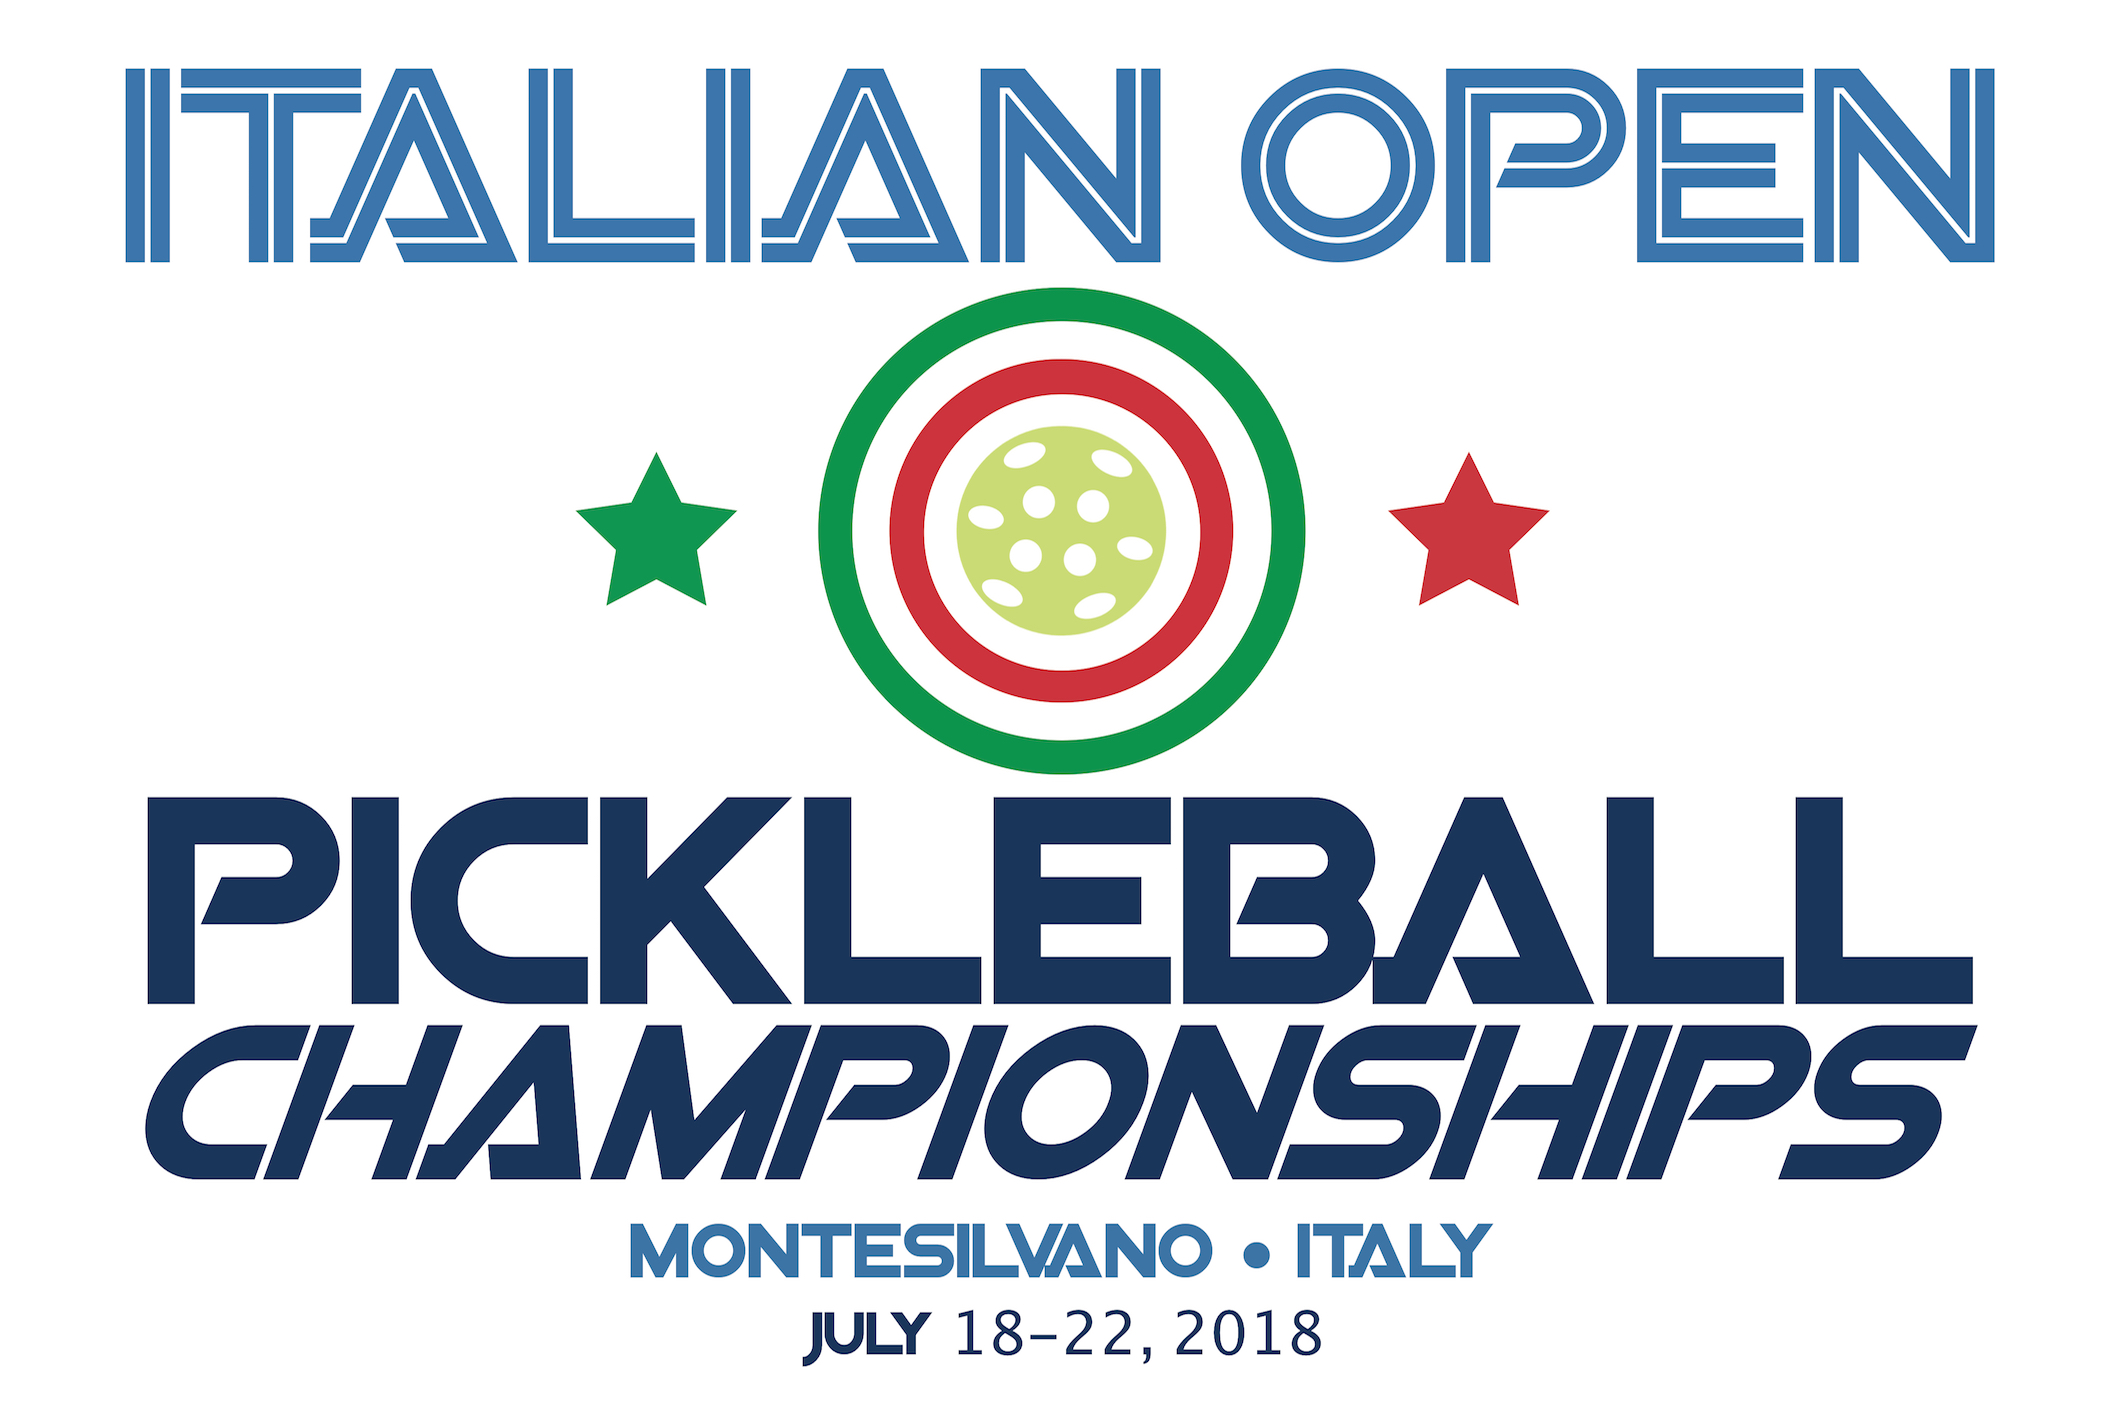 Italian Open 2018